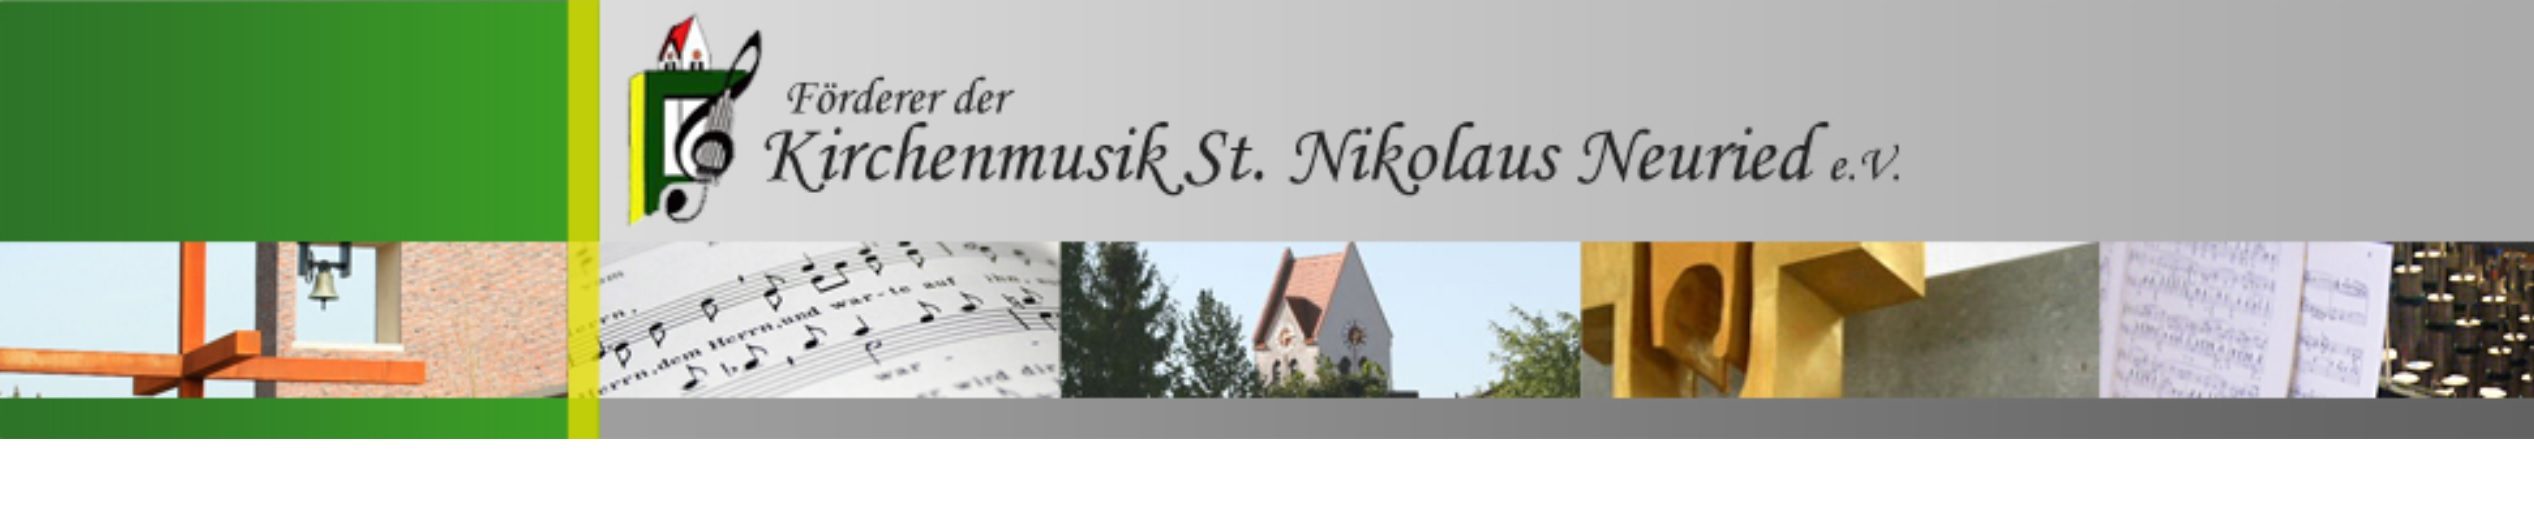 Förderer der Kirchenmusik St. Nikolaus Neuried e.V.